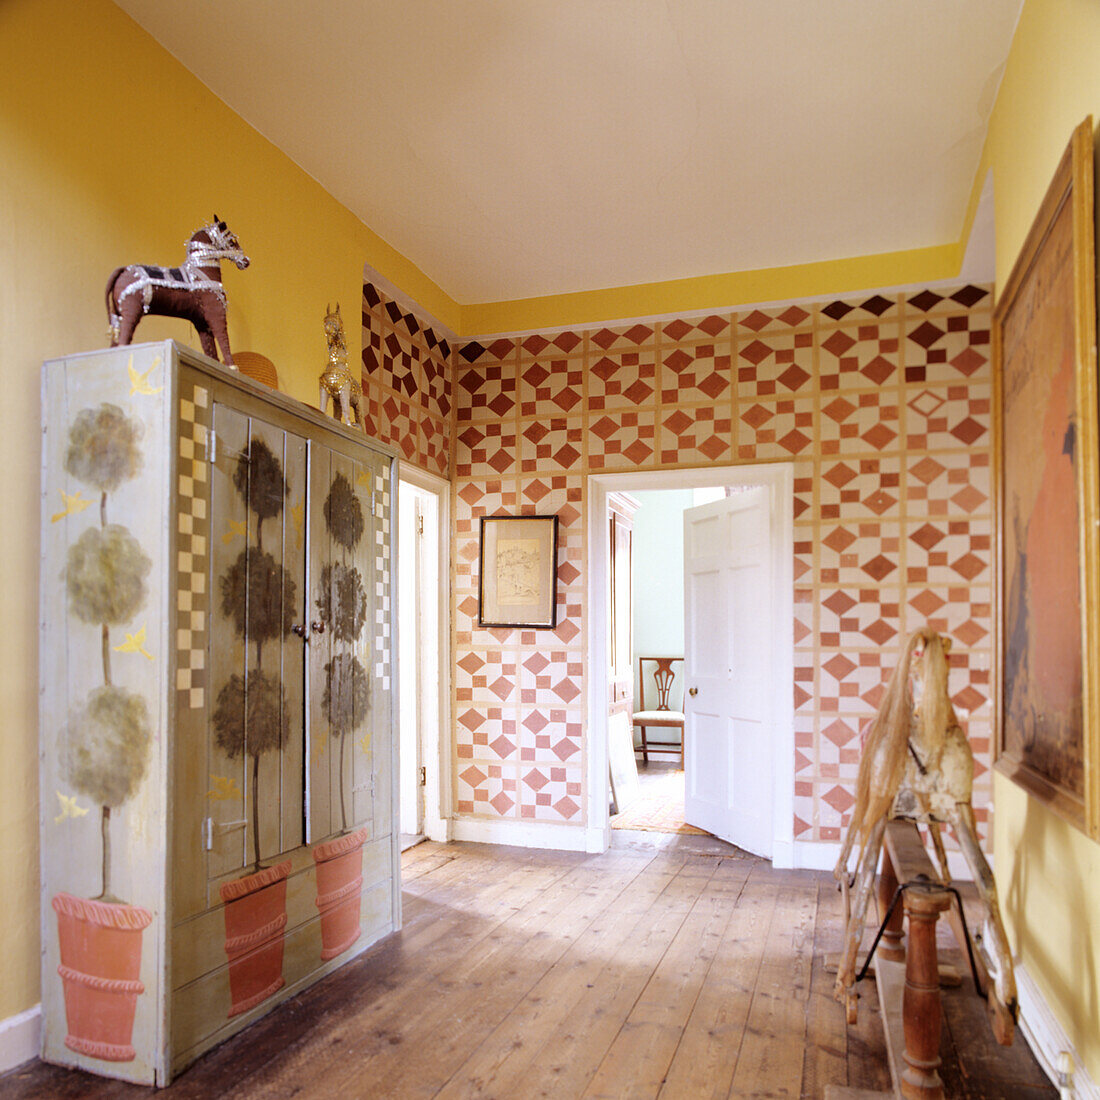 Korridor mit geometrischem Wandmuster und Vintage-Möbeln